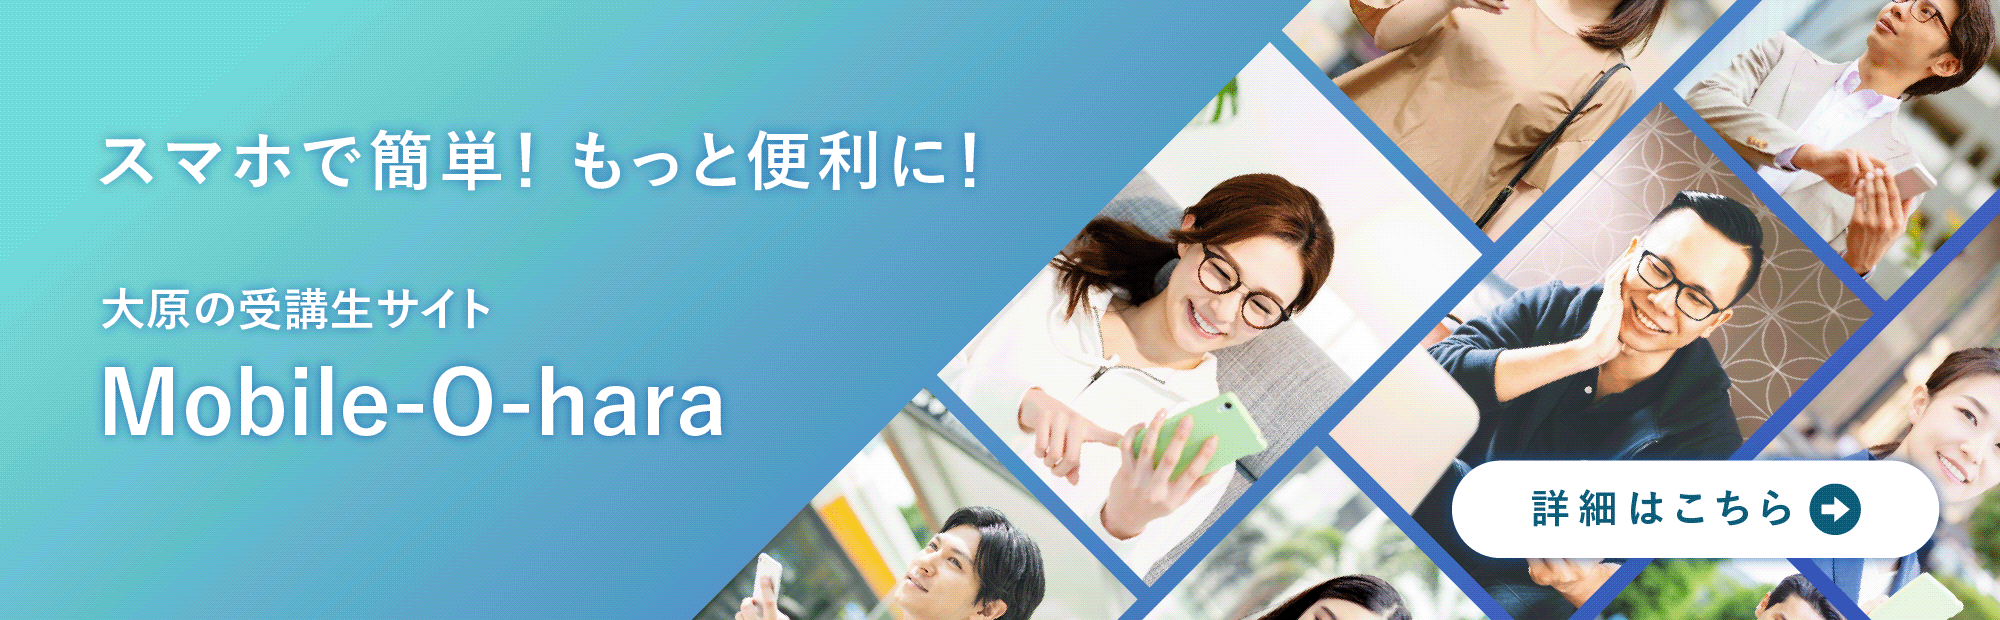 Mobile-O-haraは、受講生の皆さんが試験合格に近づけるようサポートするために開発された学習支援プラットフォームです。